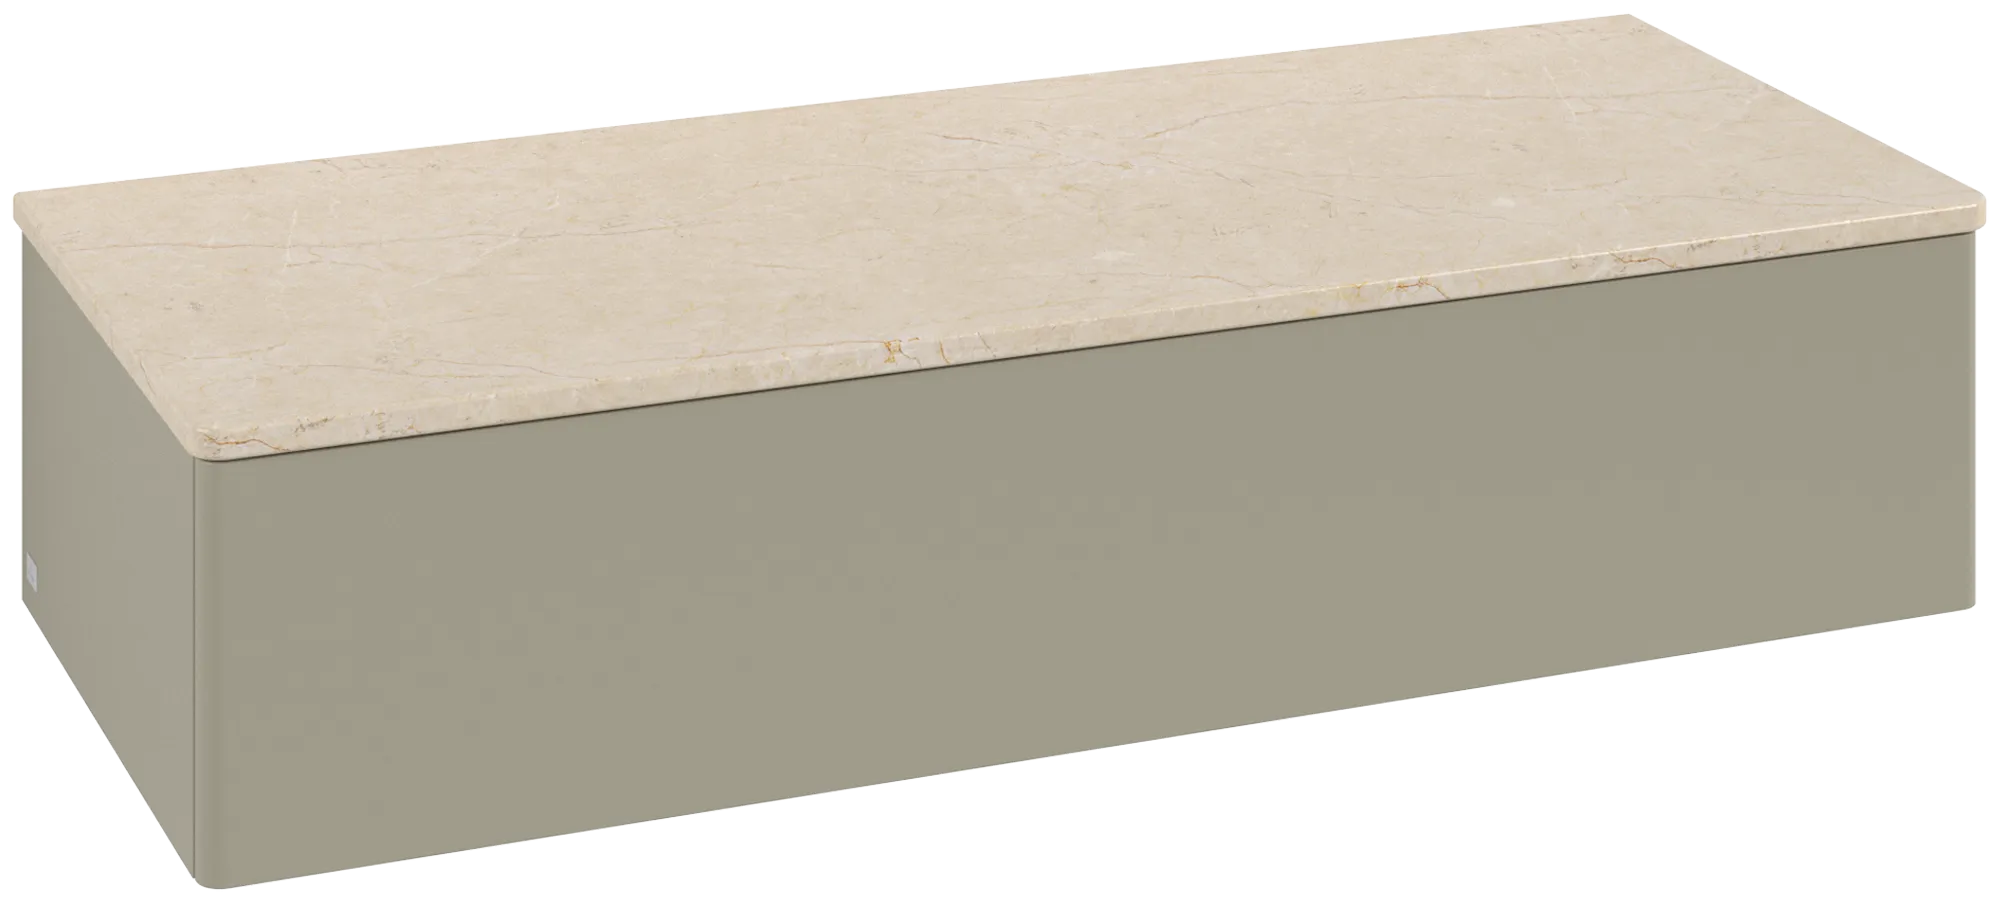 Bild von VILLEROY BOCH Antao Sideboard, 1 Auszug, 1200 x 268 x 500 mm, Front ohne Struktur, Stone Grey Matt Lacquer / Botticino #K41003HK